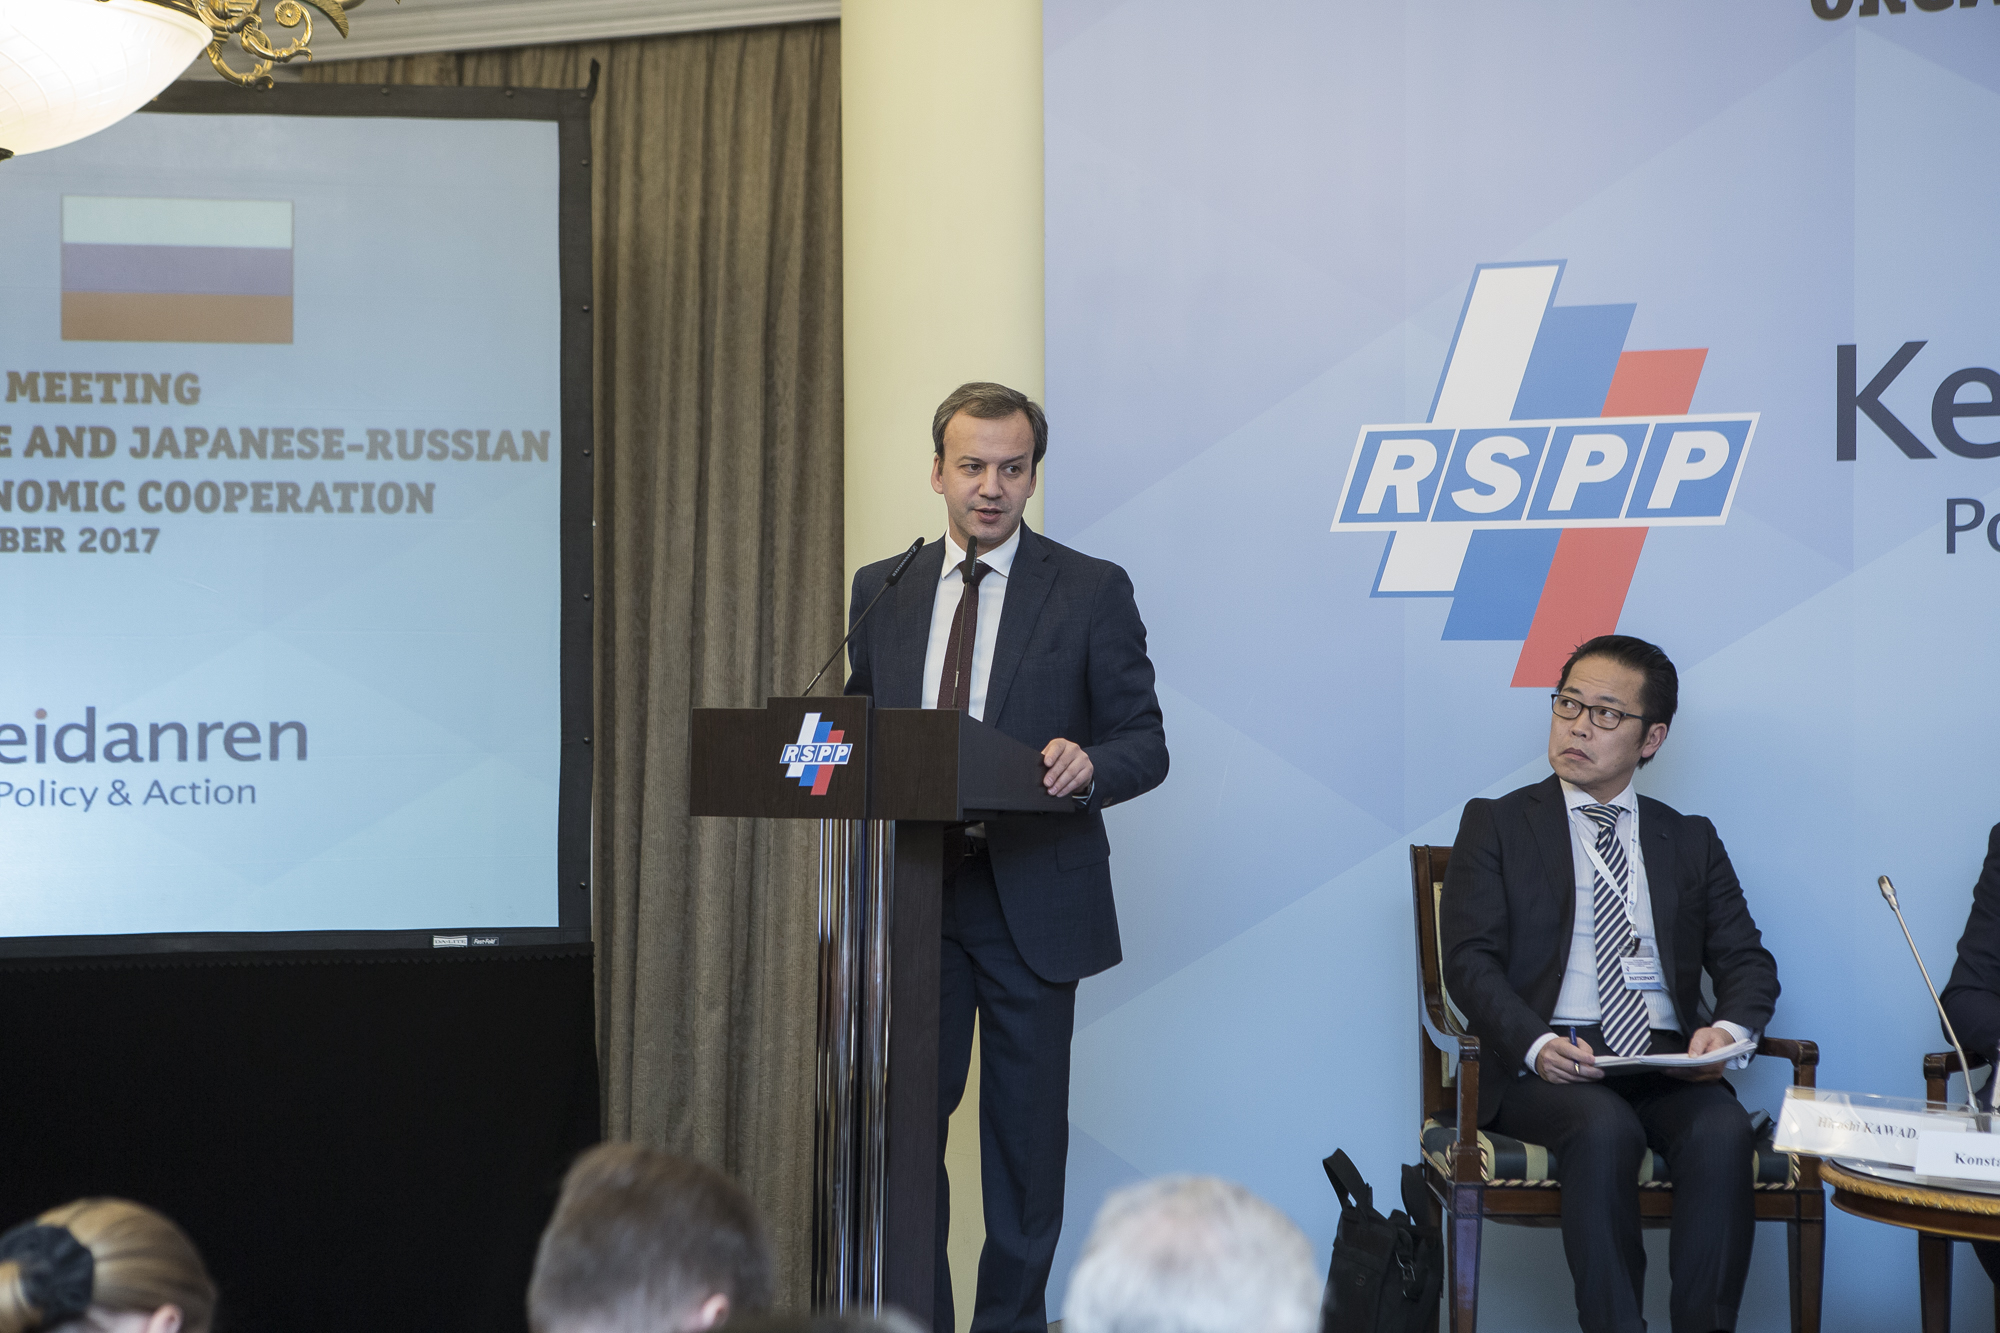 Аркадий Дворкович пригласил представителей власти и бизнеса Японии на ПМЭФ и ВЭФ 2018 года